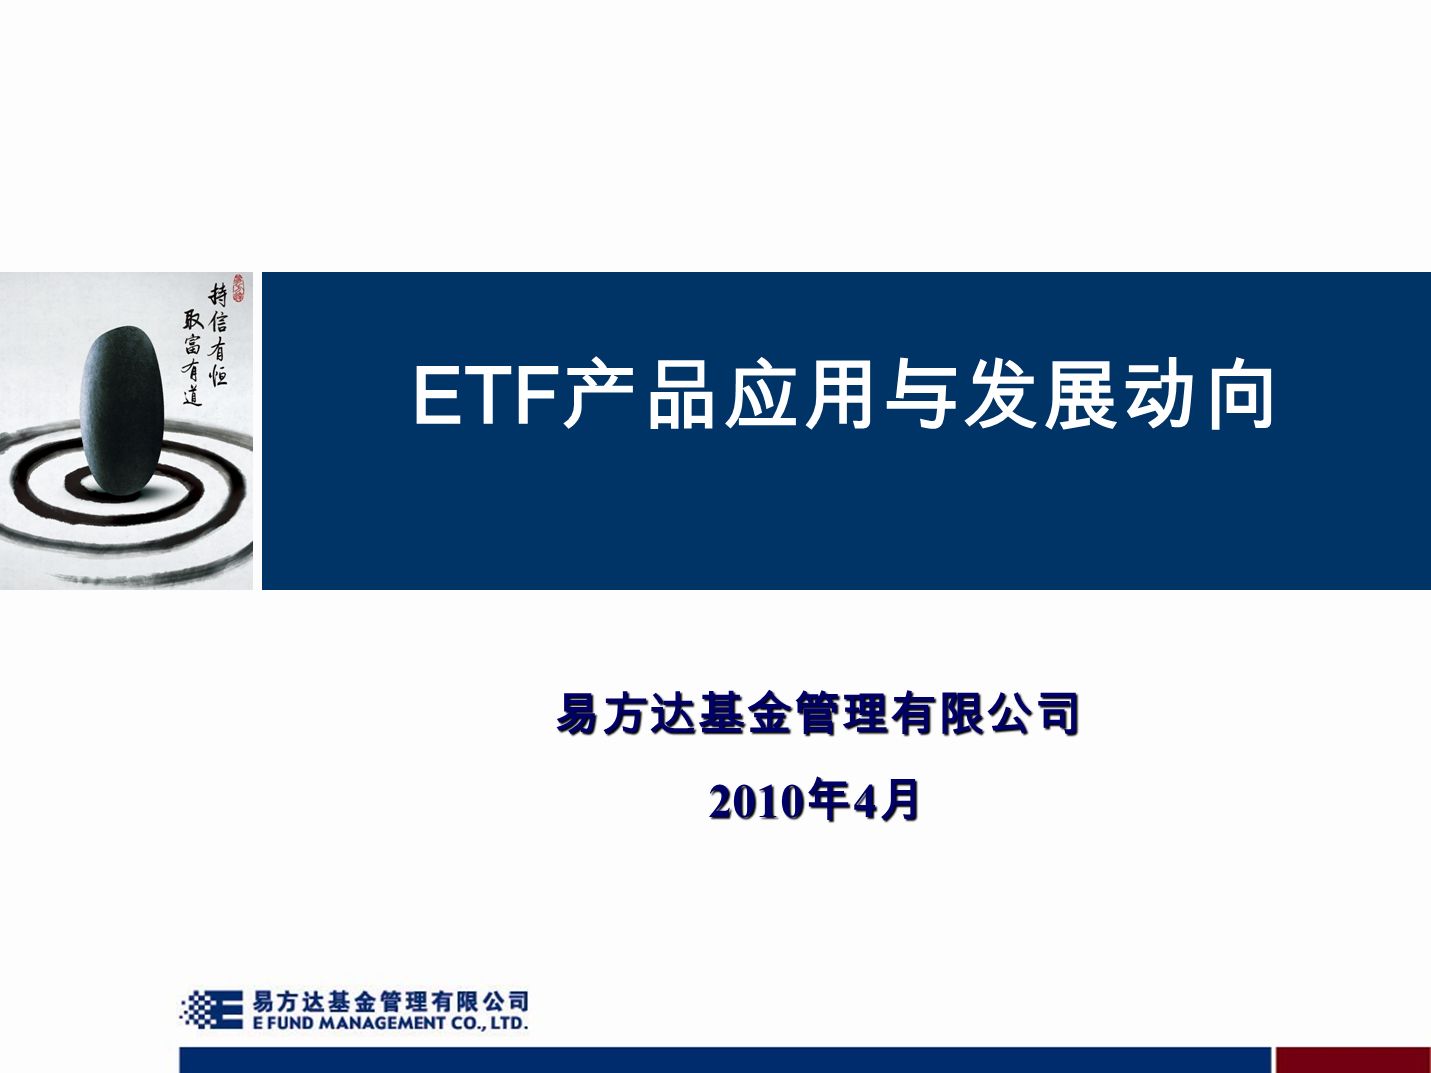 ETF 产品应用与发展动向 易方达基金管理有限公司 2010 年 4 月